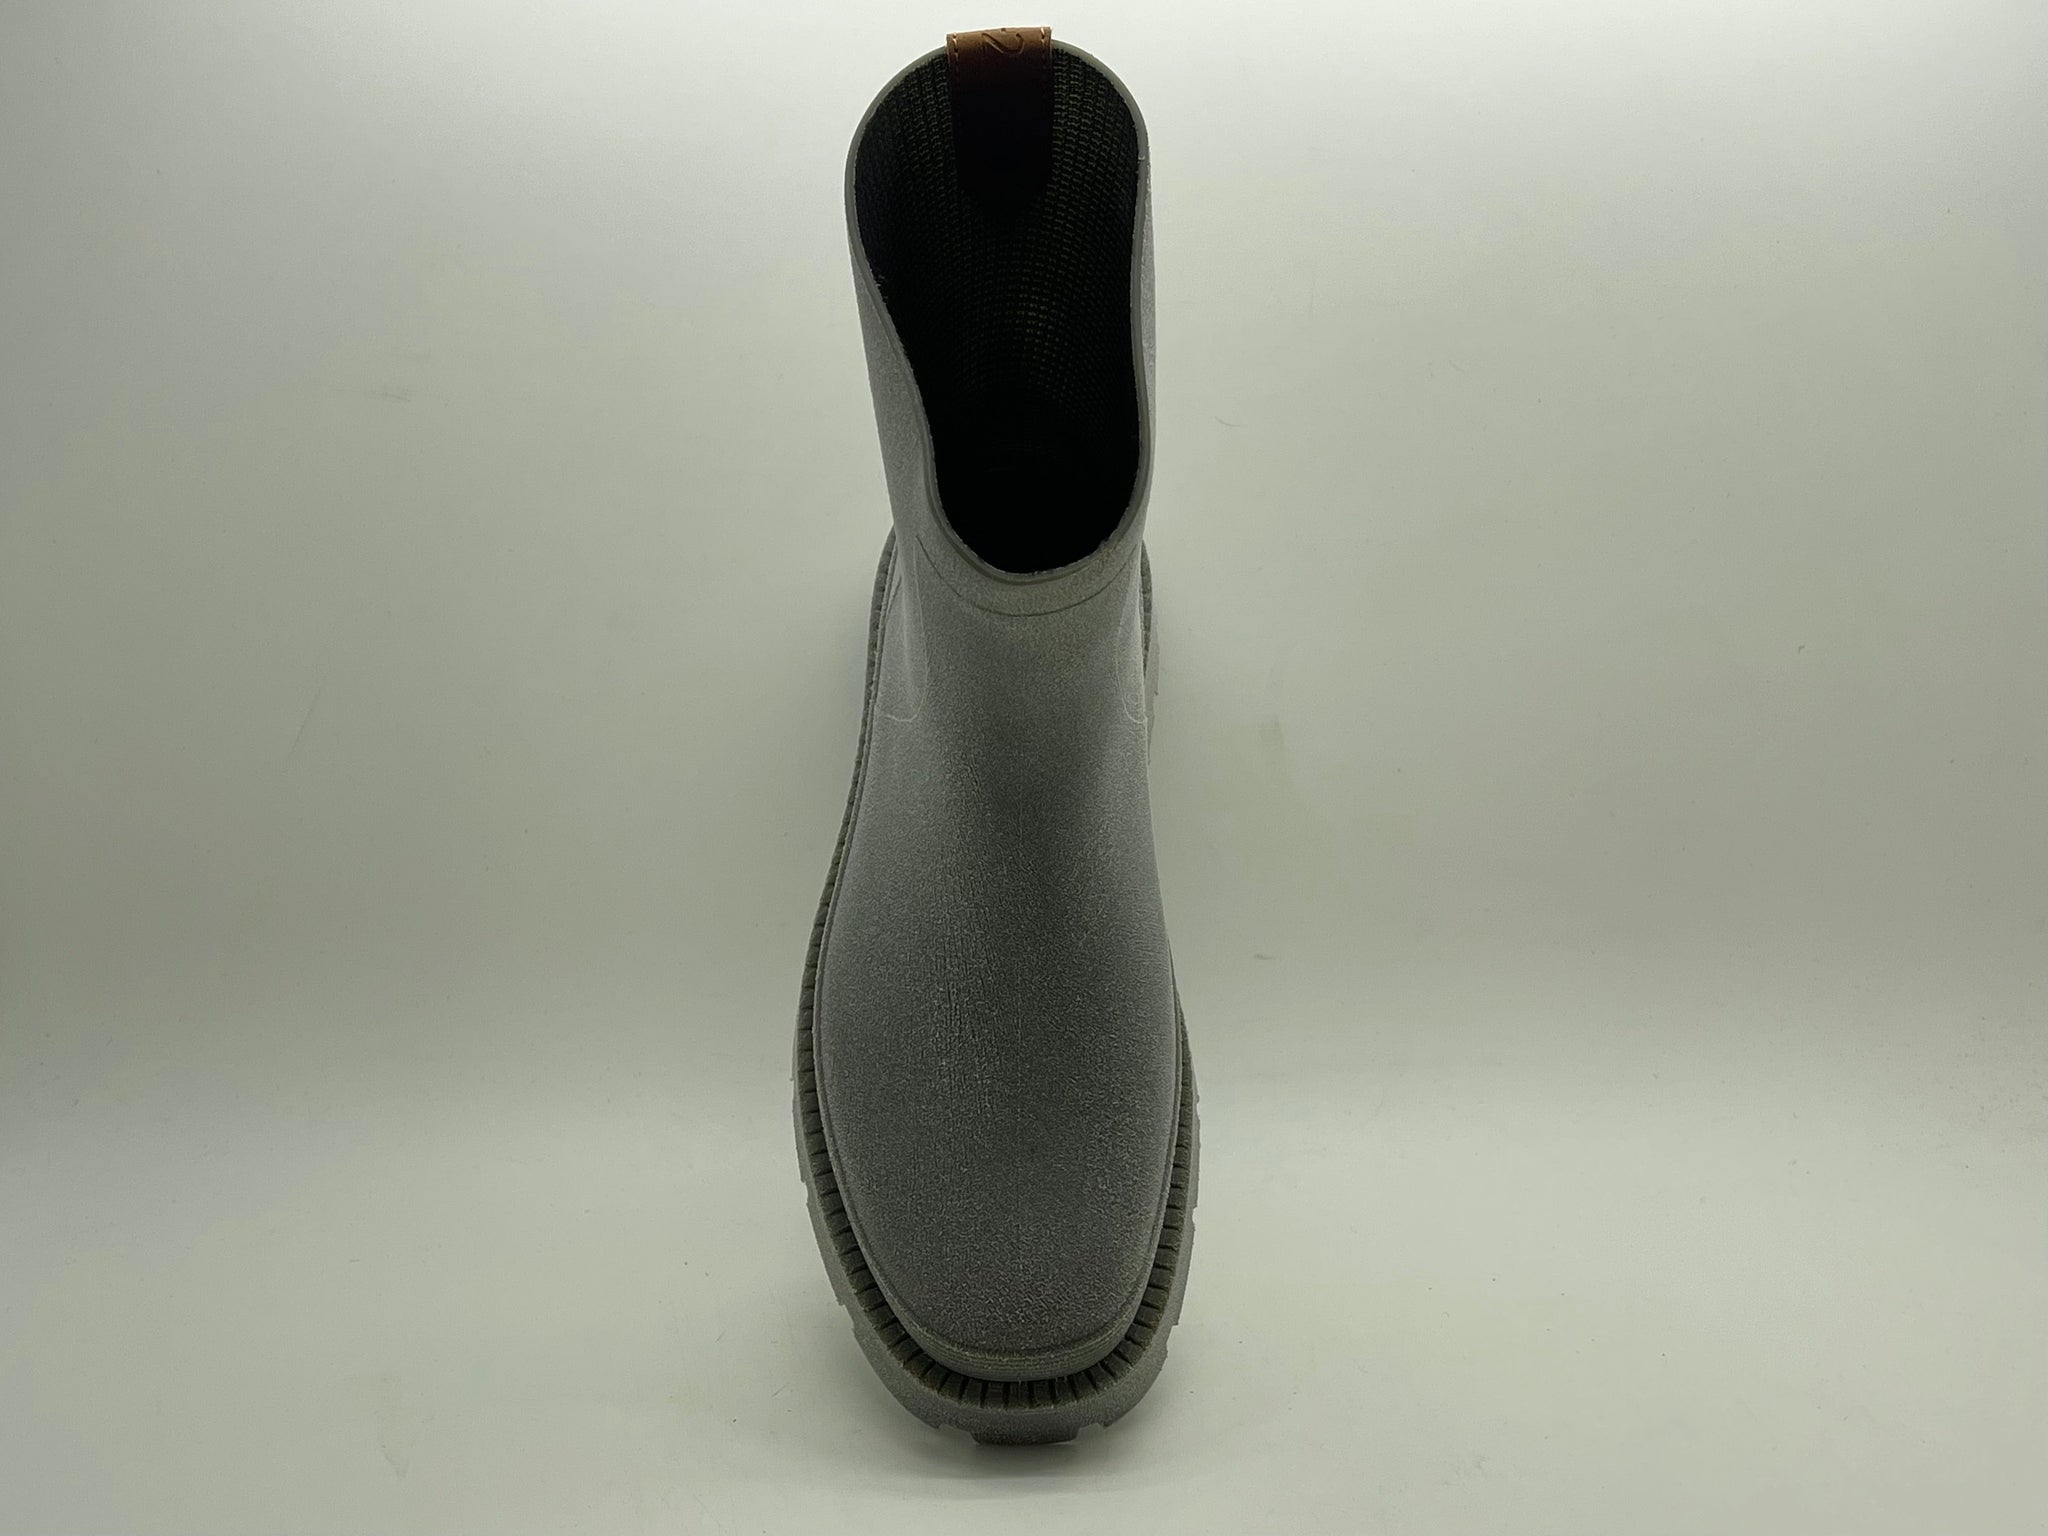 NAT 2 fodtøj nat-2™ Bio Boot grå grøn vegansk (W) | 100% vandtætte biologisk nedbrydelige regnstøvler bæredygtig mode etisk mode